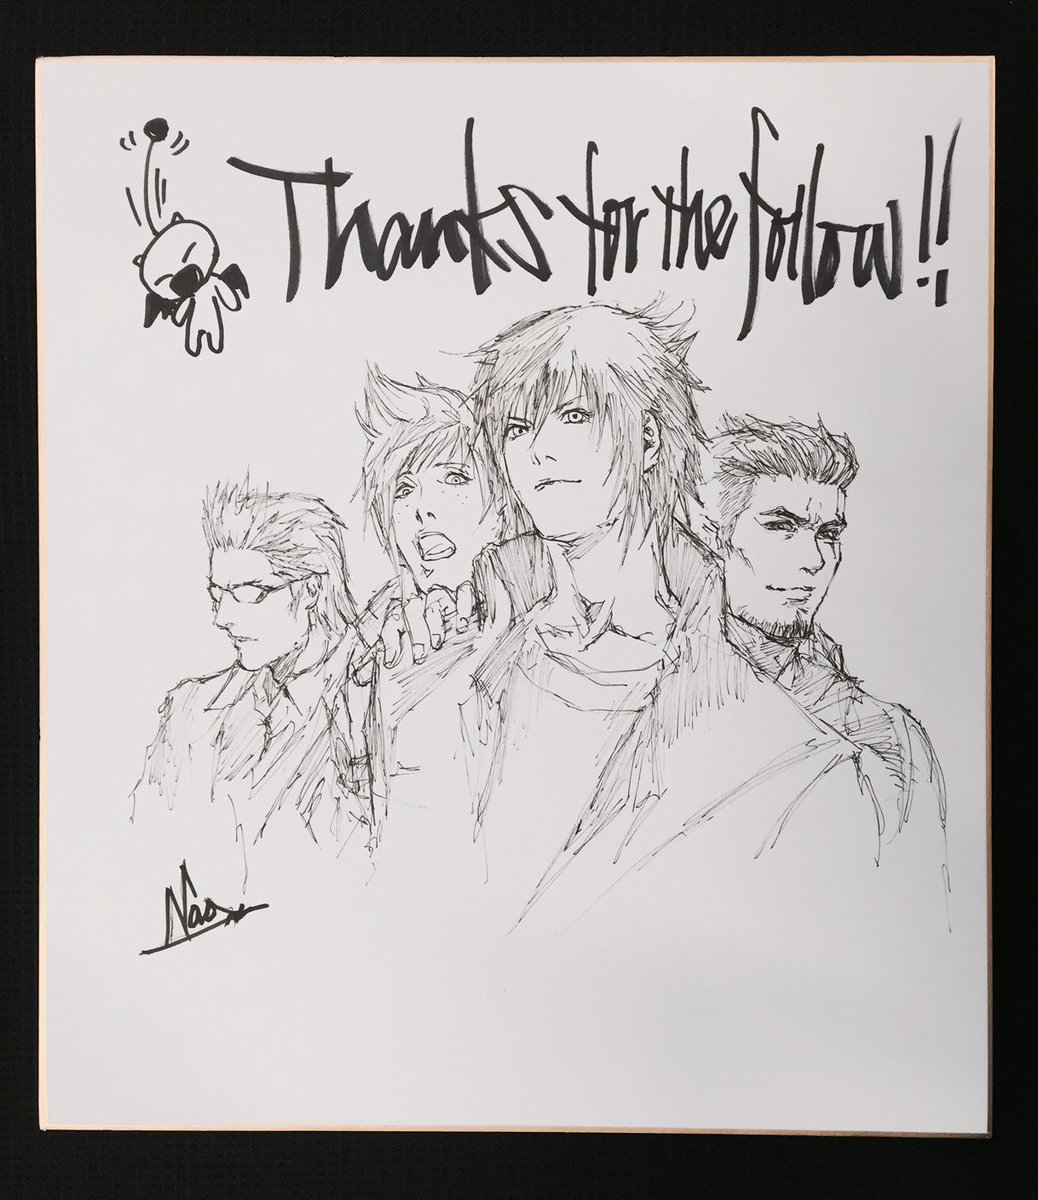 Final Fantasy Xv チョコボの飼育員大募集キャンペーン報酬の1つ Ffxv直筆イラストはコチラ 当選のご連絡は本日中にdmにてお送り予定です 乞うご期待っっ Ff15 Ffxv